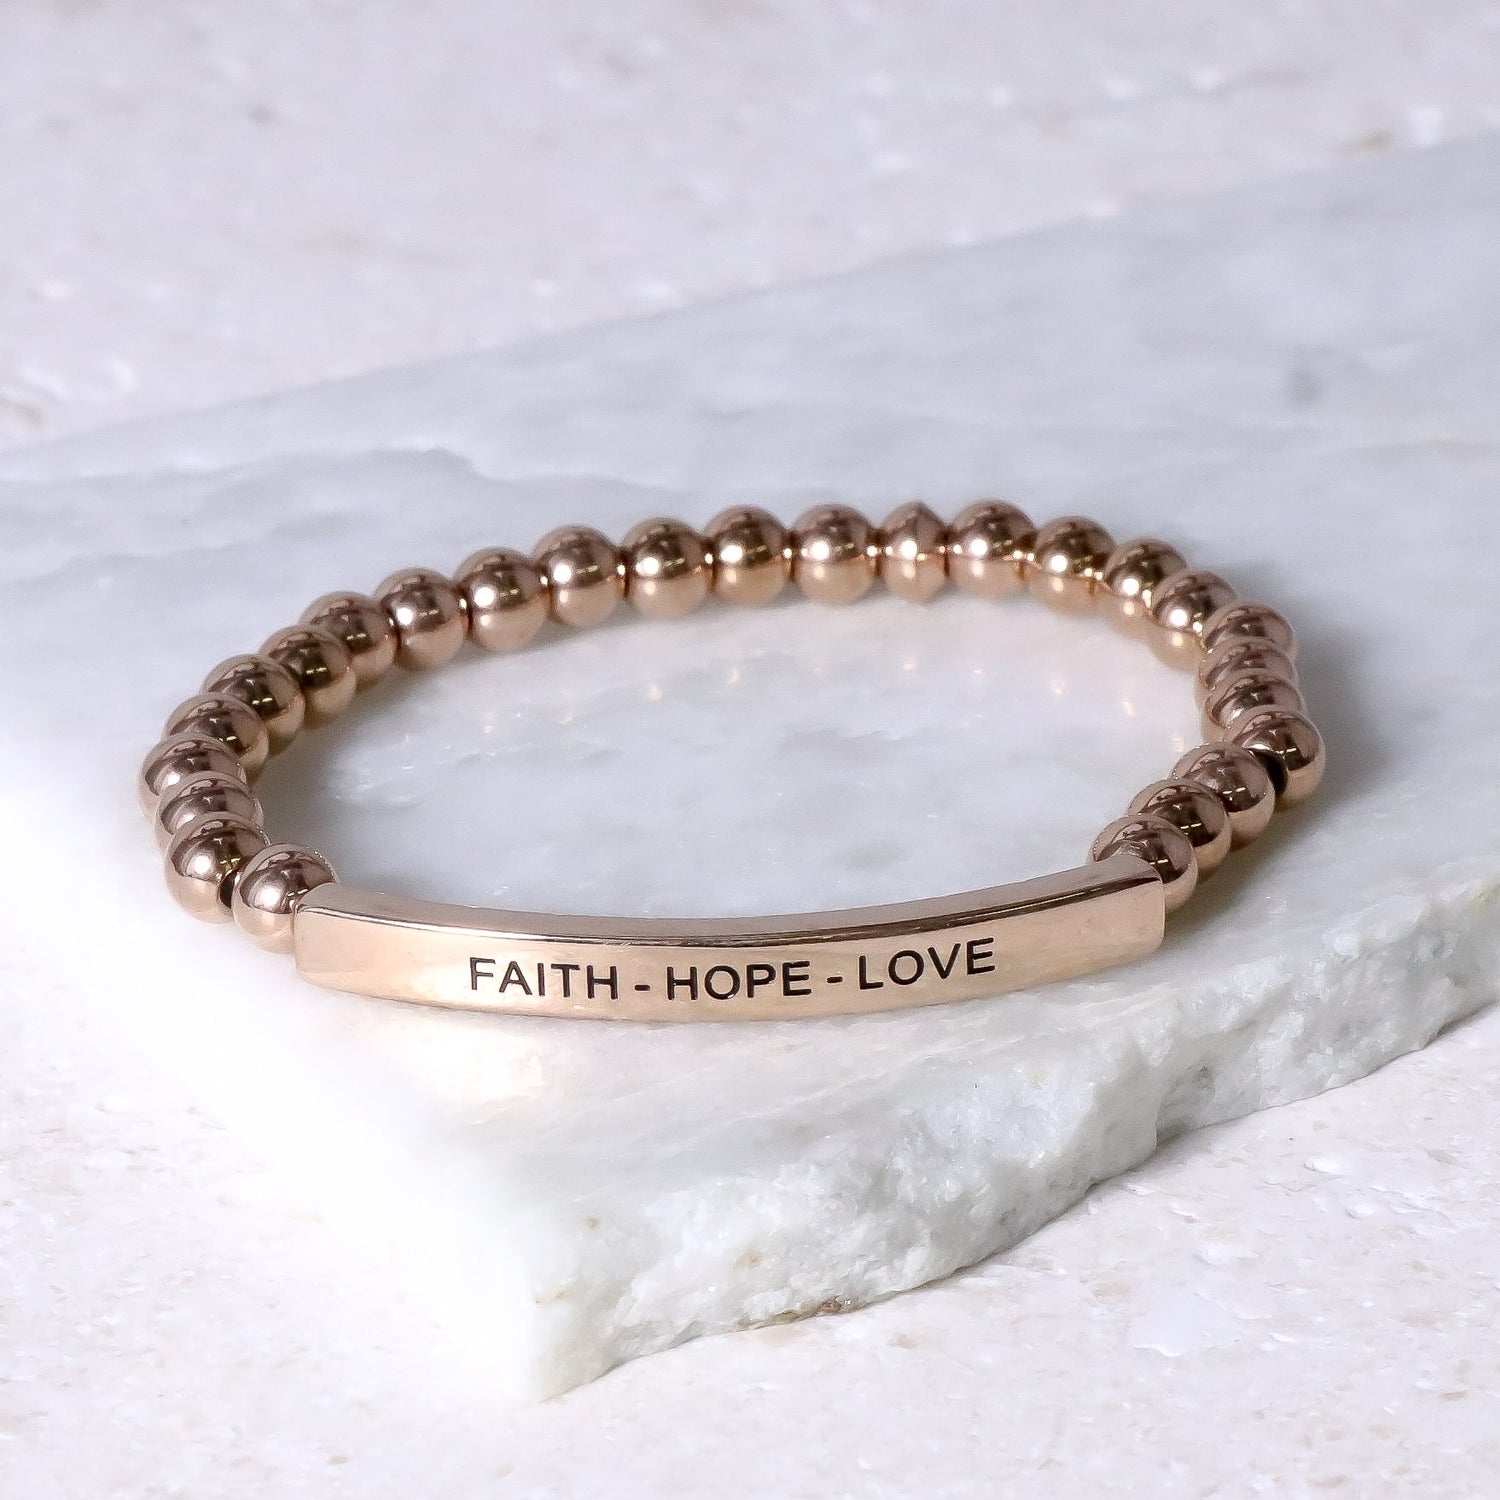 FAITH - HOPE - LOVE - Inspiration Co.